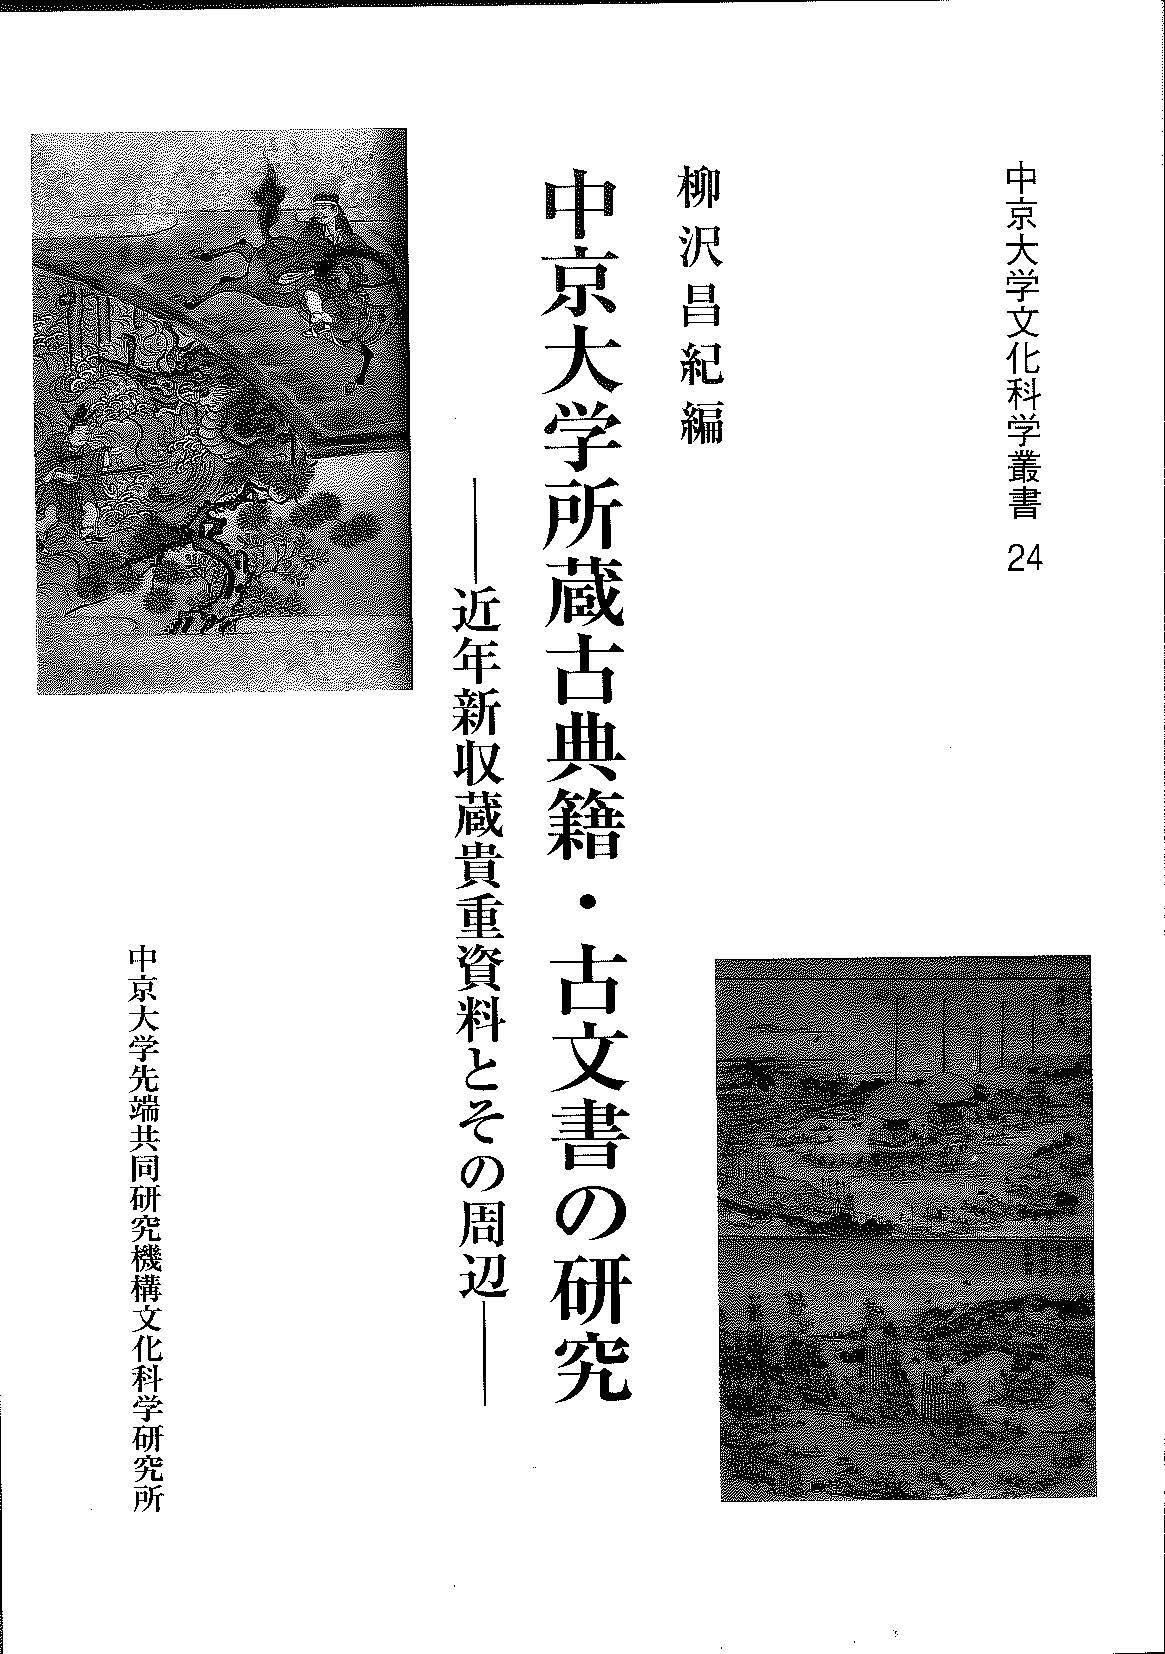 中京大学所蔵古典籍・古文書の研究